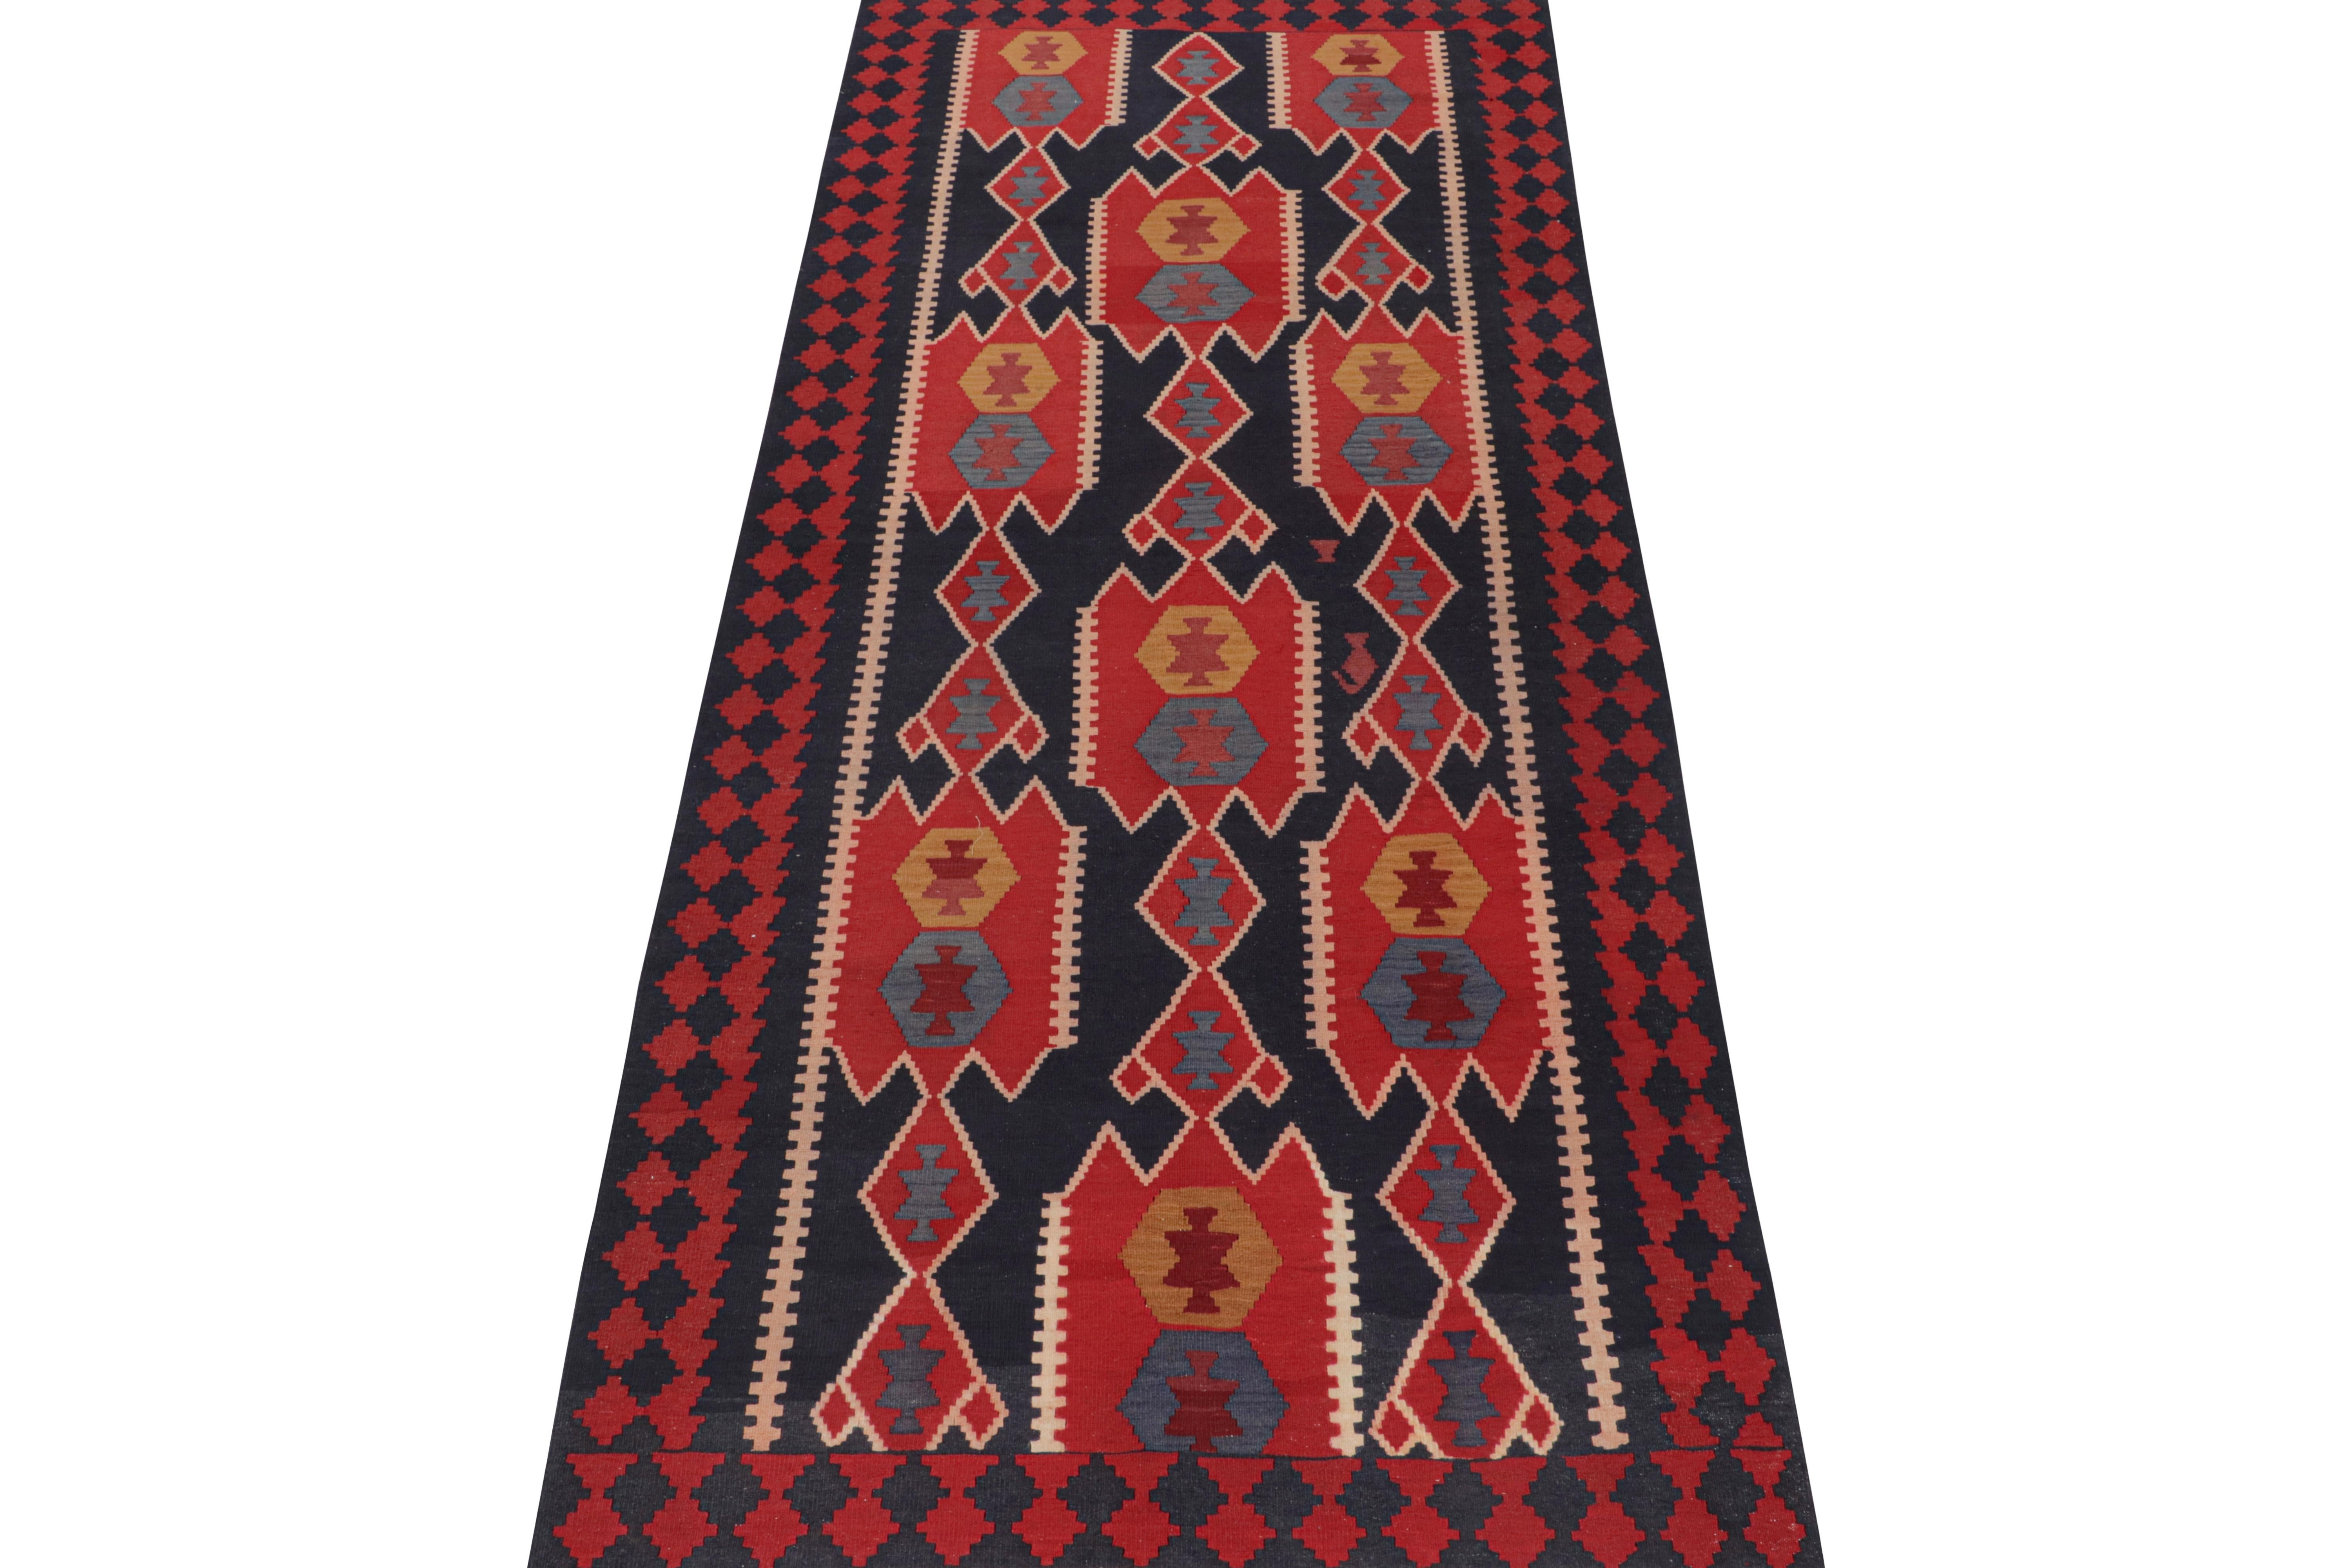 Ce Rug & Kilim persan vintage 4x11 est un tapis tribal de Meshkin, un petit village du nord-ouest de l'Iran connu pour ses fabuleuses œuvres. Tissé à la main en laine, il date des années 1950-1960. 

Sur le Design :

Son design privilégie les motifs